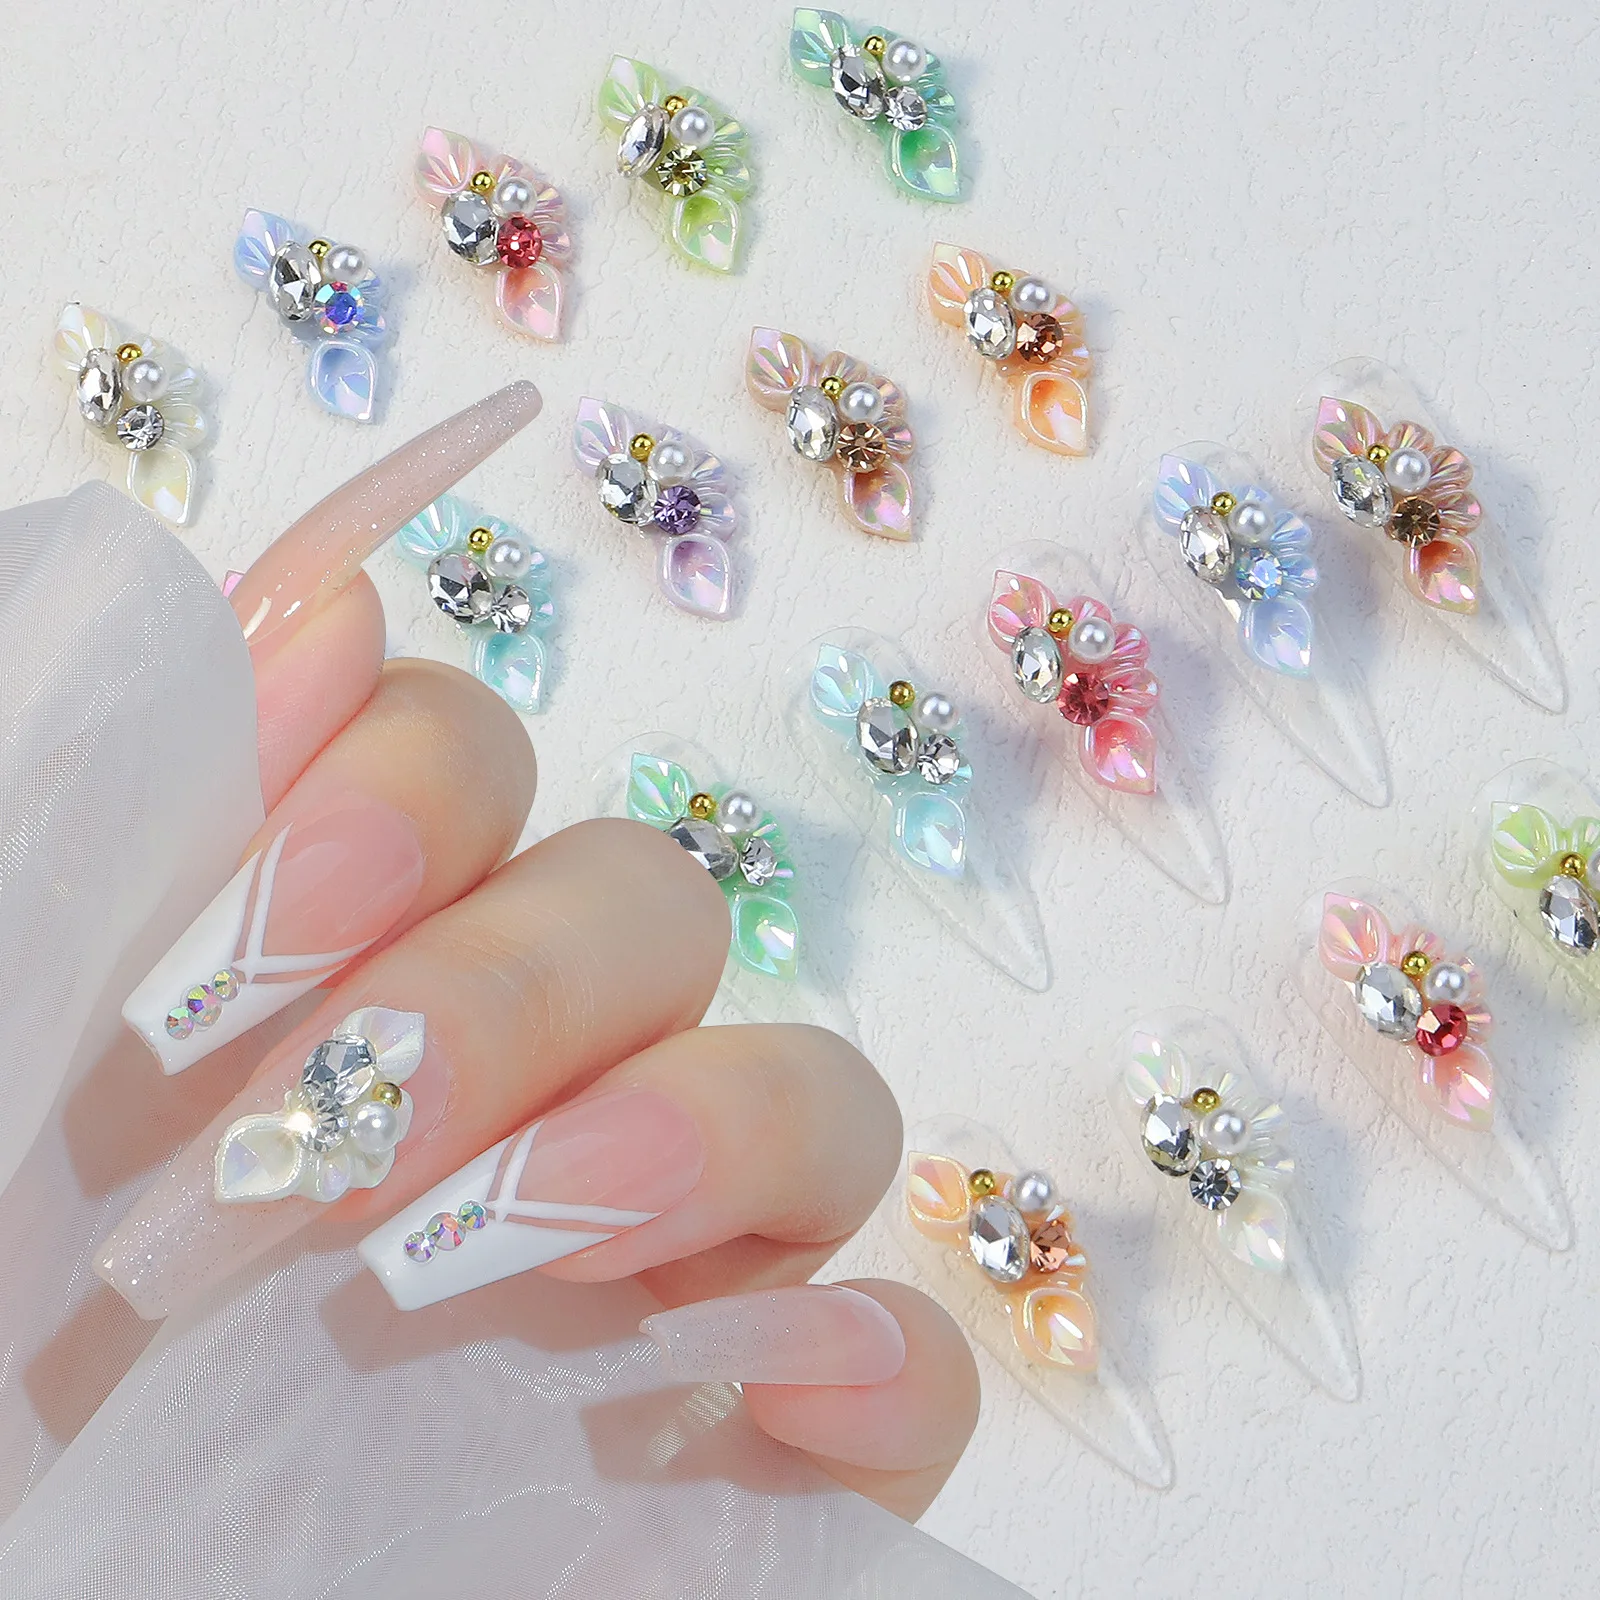 

10 шт 3D акриловые цветы для ногтей амулеты резные с кристаллами жемчужные стразы художественное оформление ногтей цветочное украшение для ногтей #202